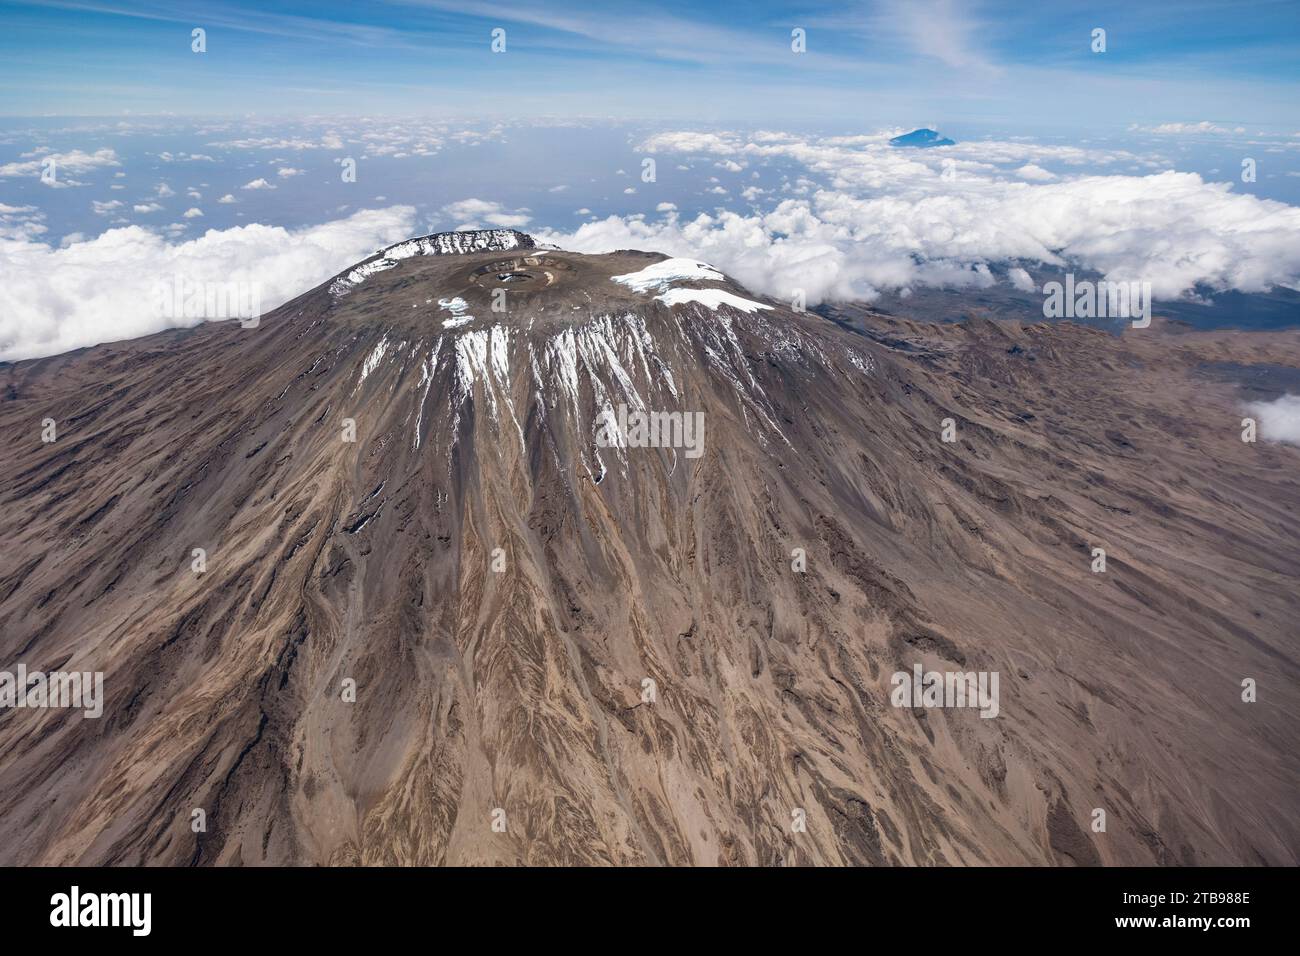 Peak of Mount Kilimanjaro; Tanzania Stock Photo